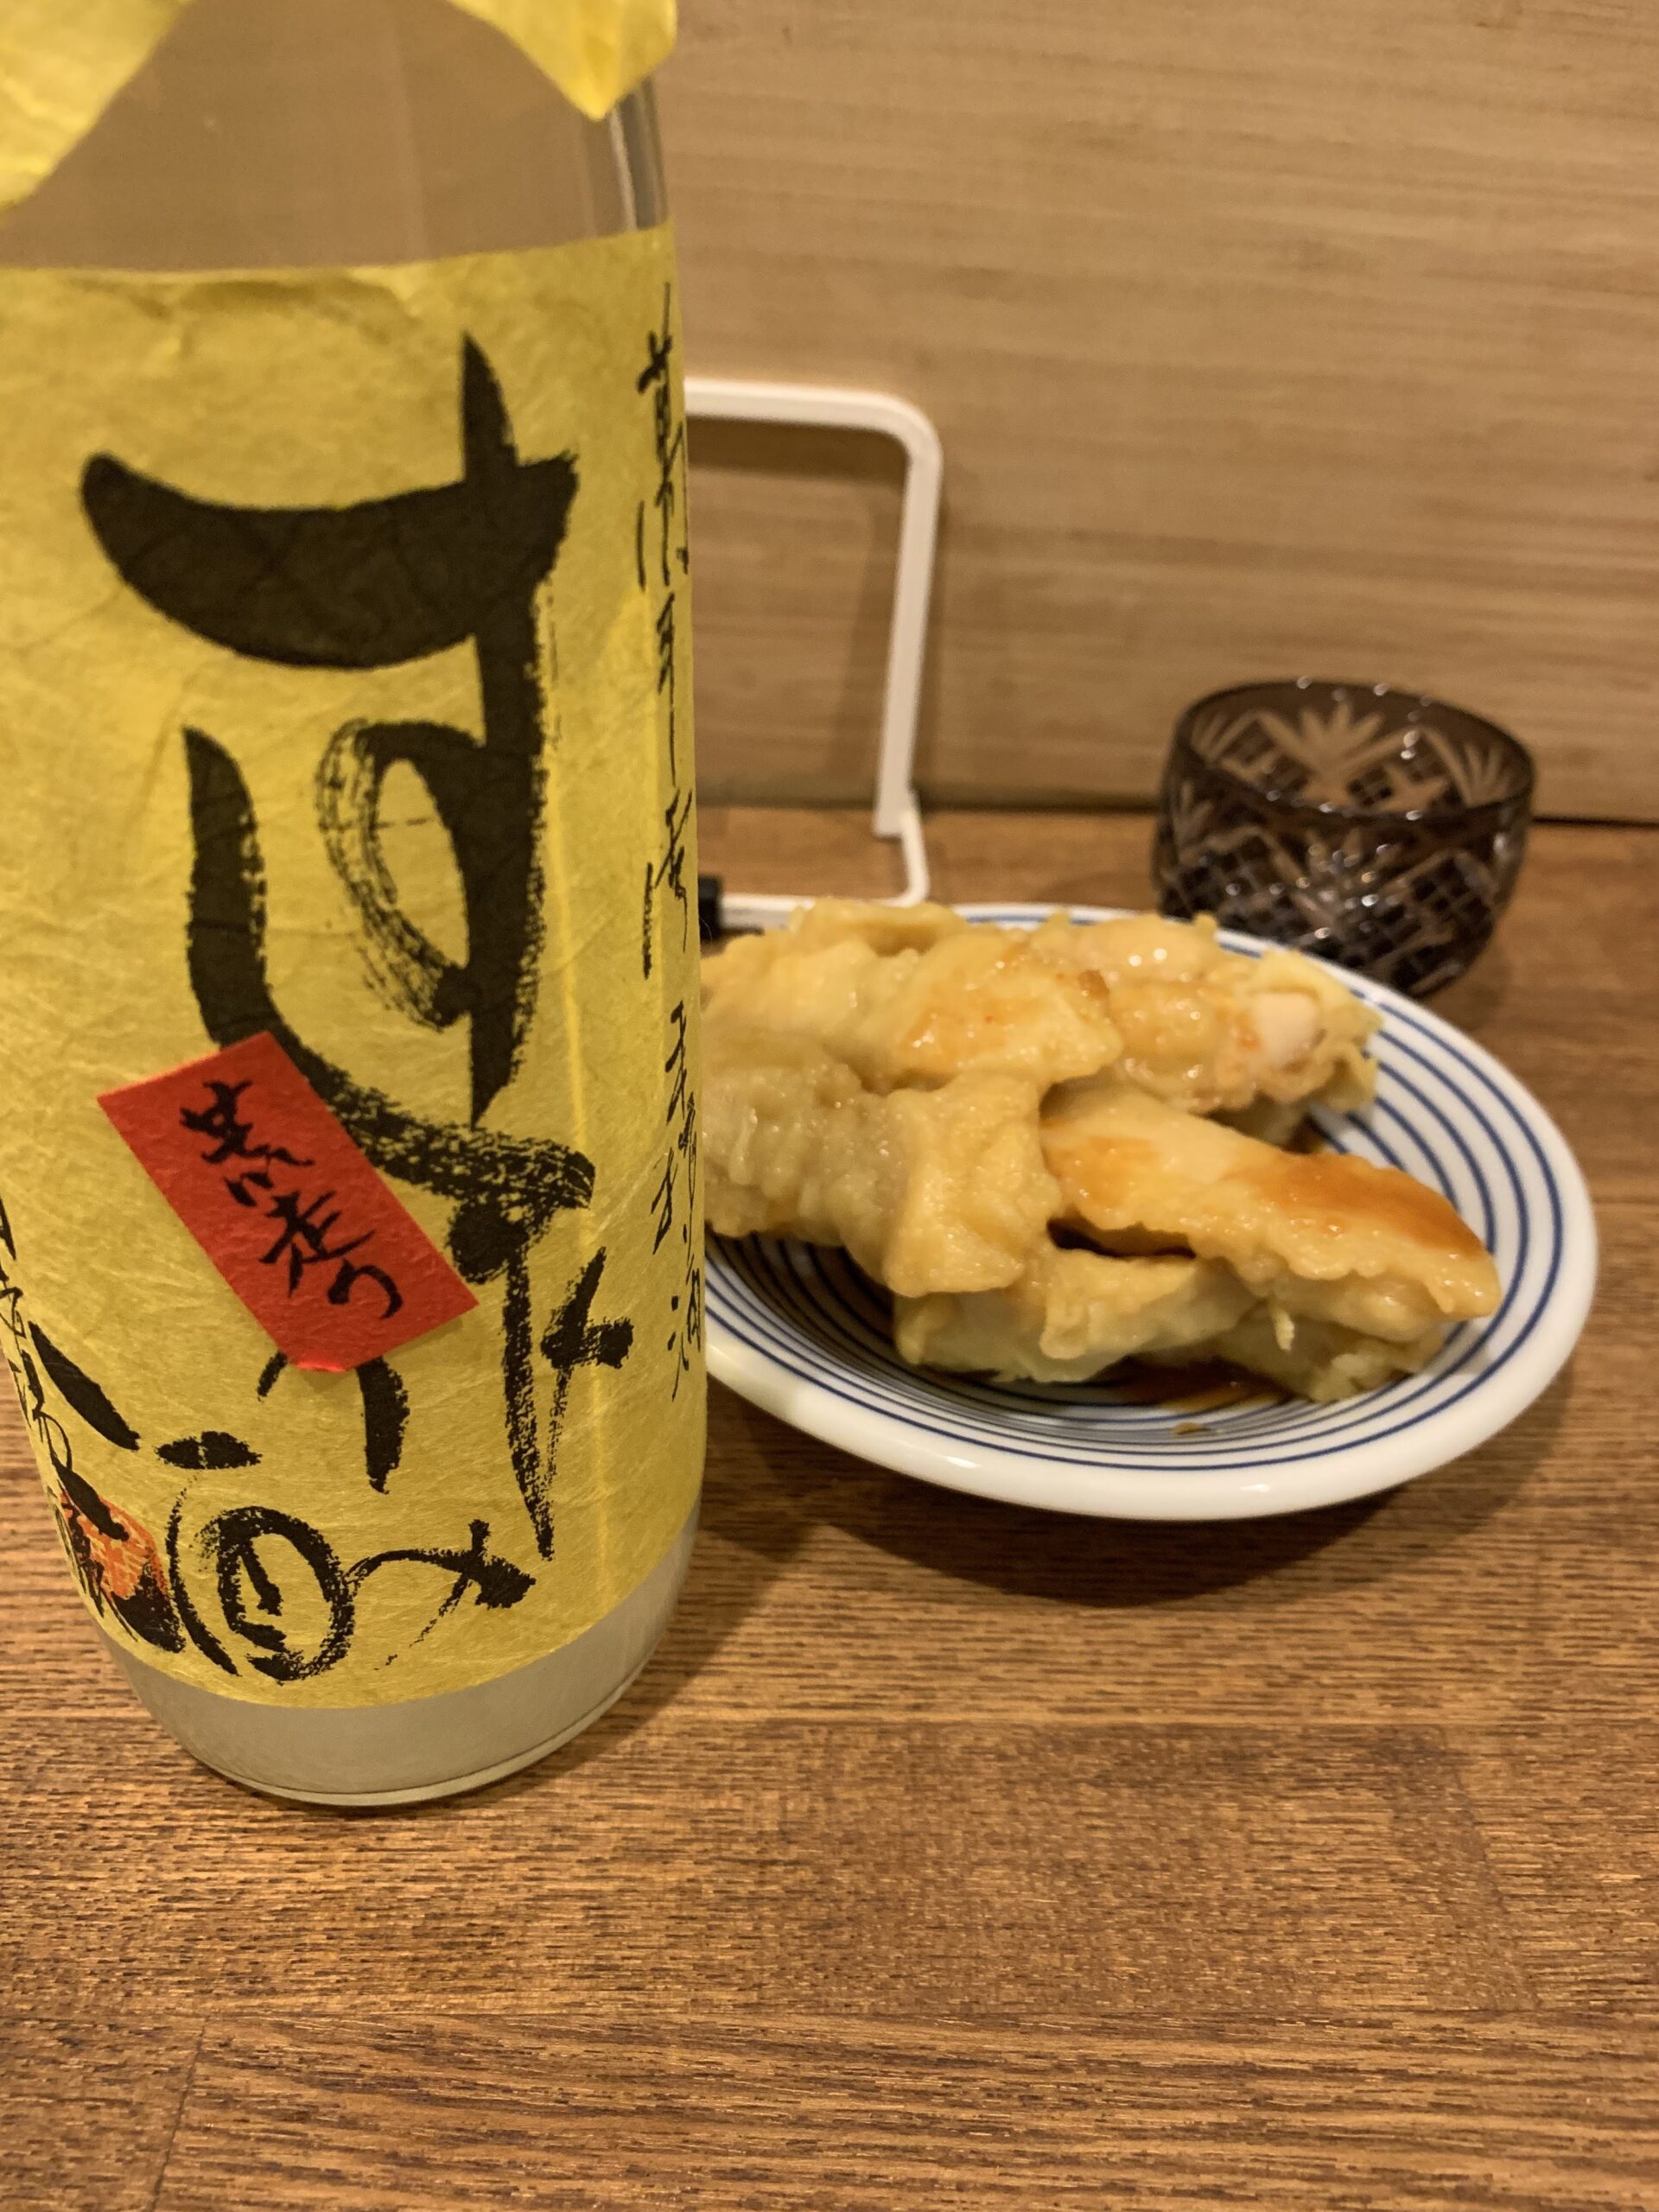 一般的な方法では手に入らない。寿司作限定の日本酒